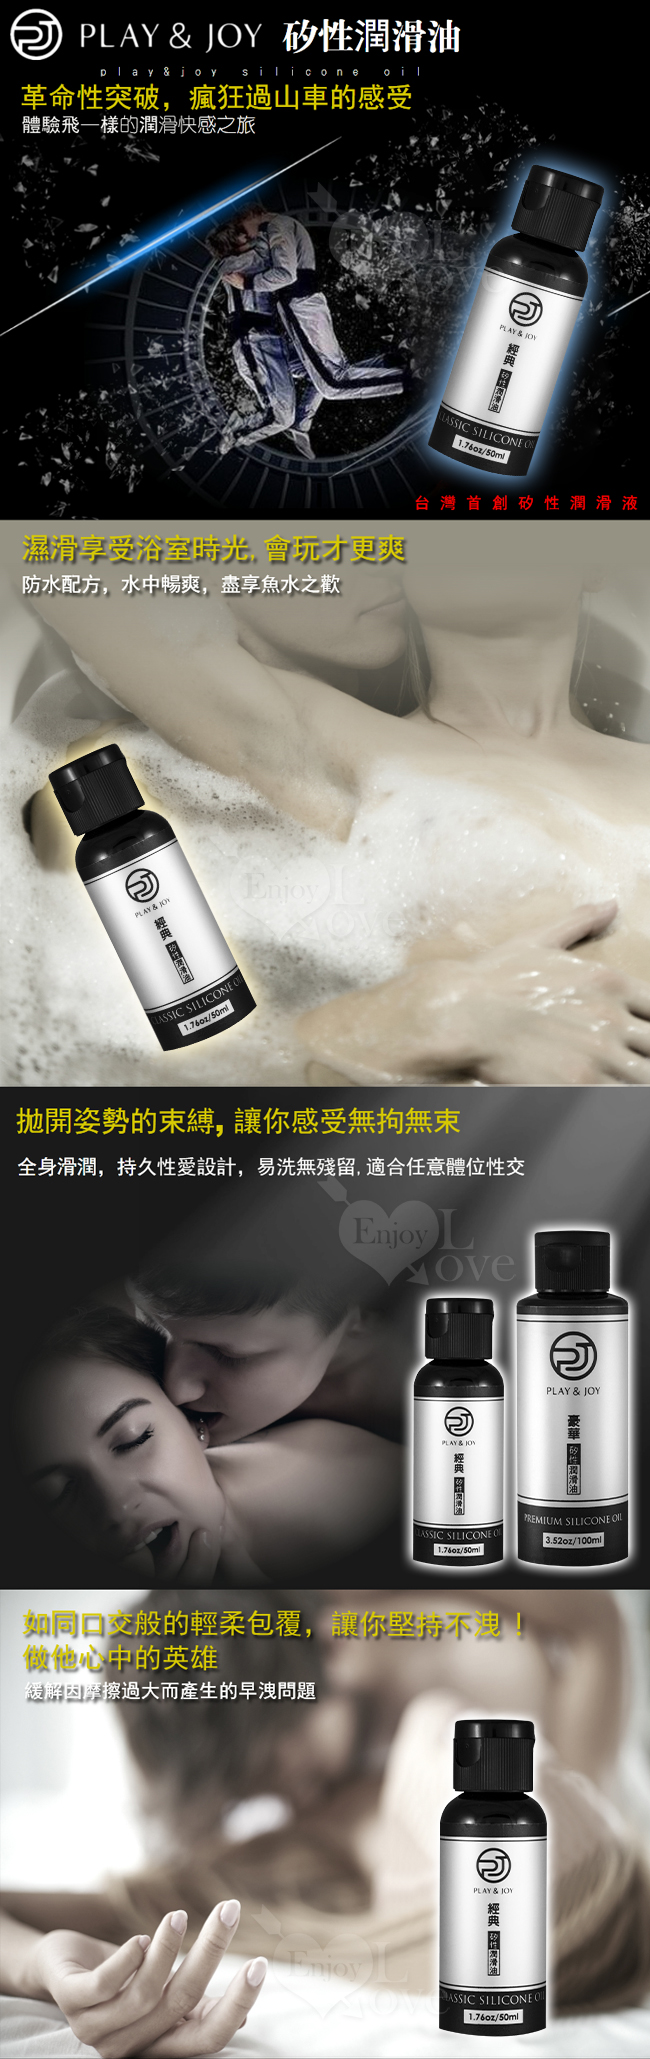 台灣製造 Play&Joy狂潮‧經典型矽性潤滑油 50ml